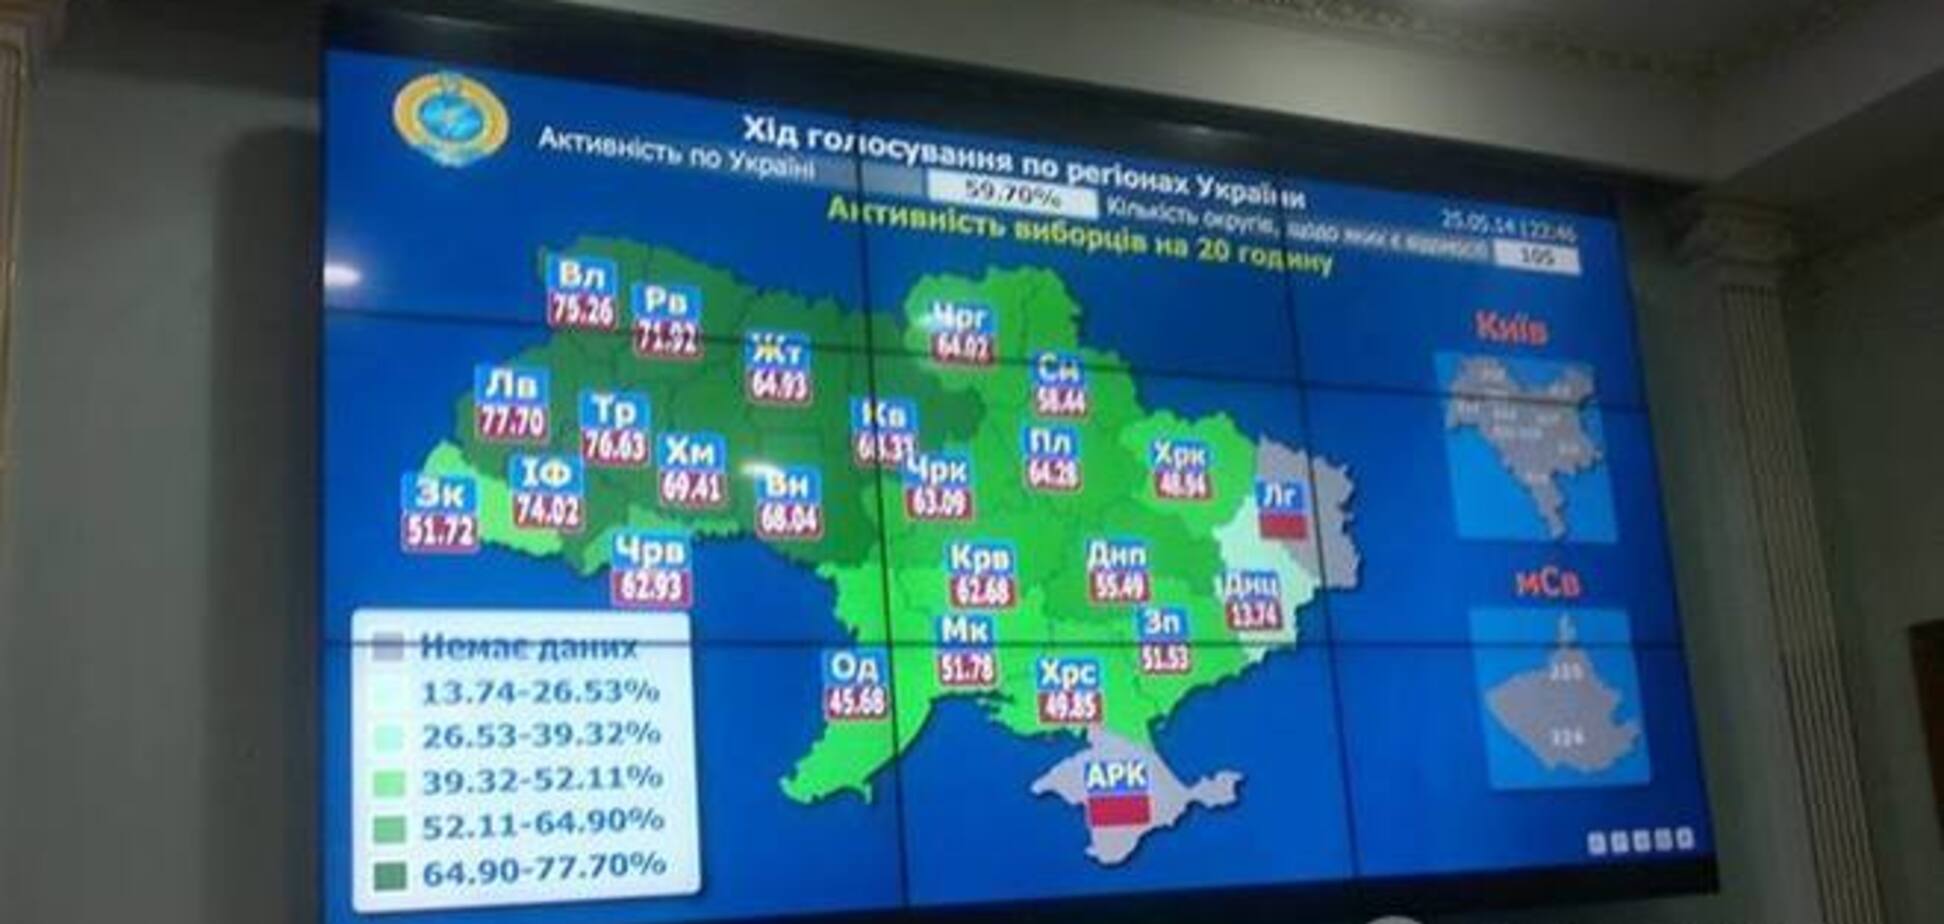 Явка виборців по Україні на 20:00 склала 60,54% - ЦВК